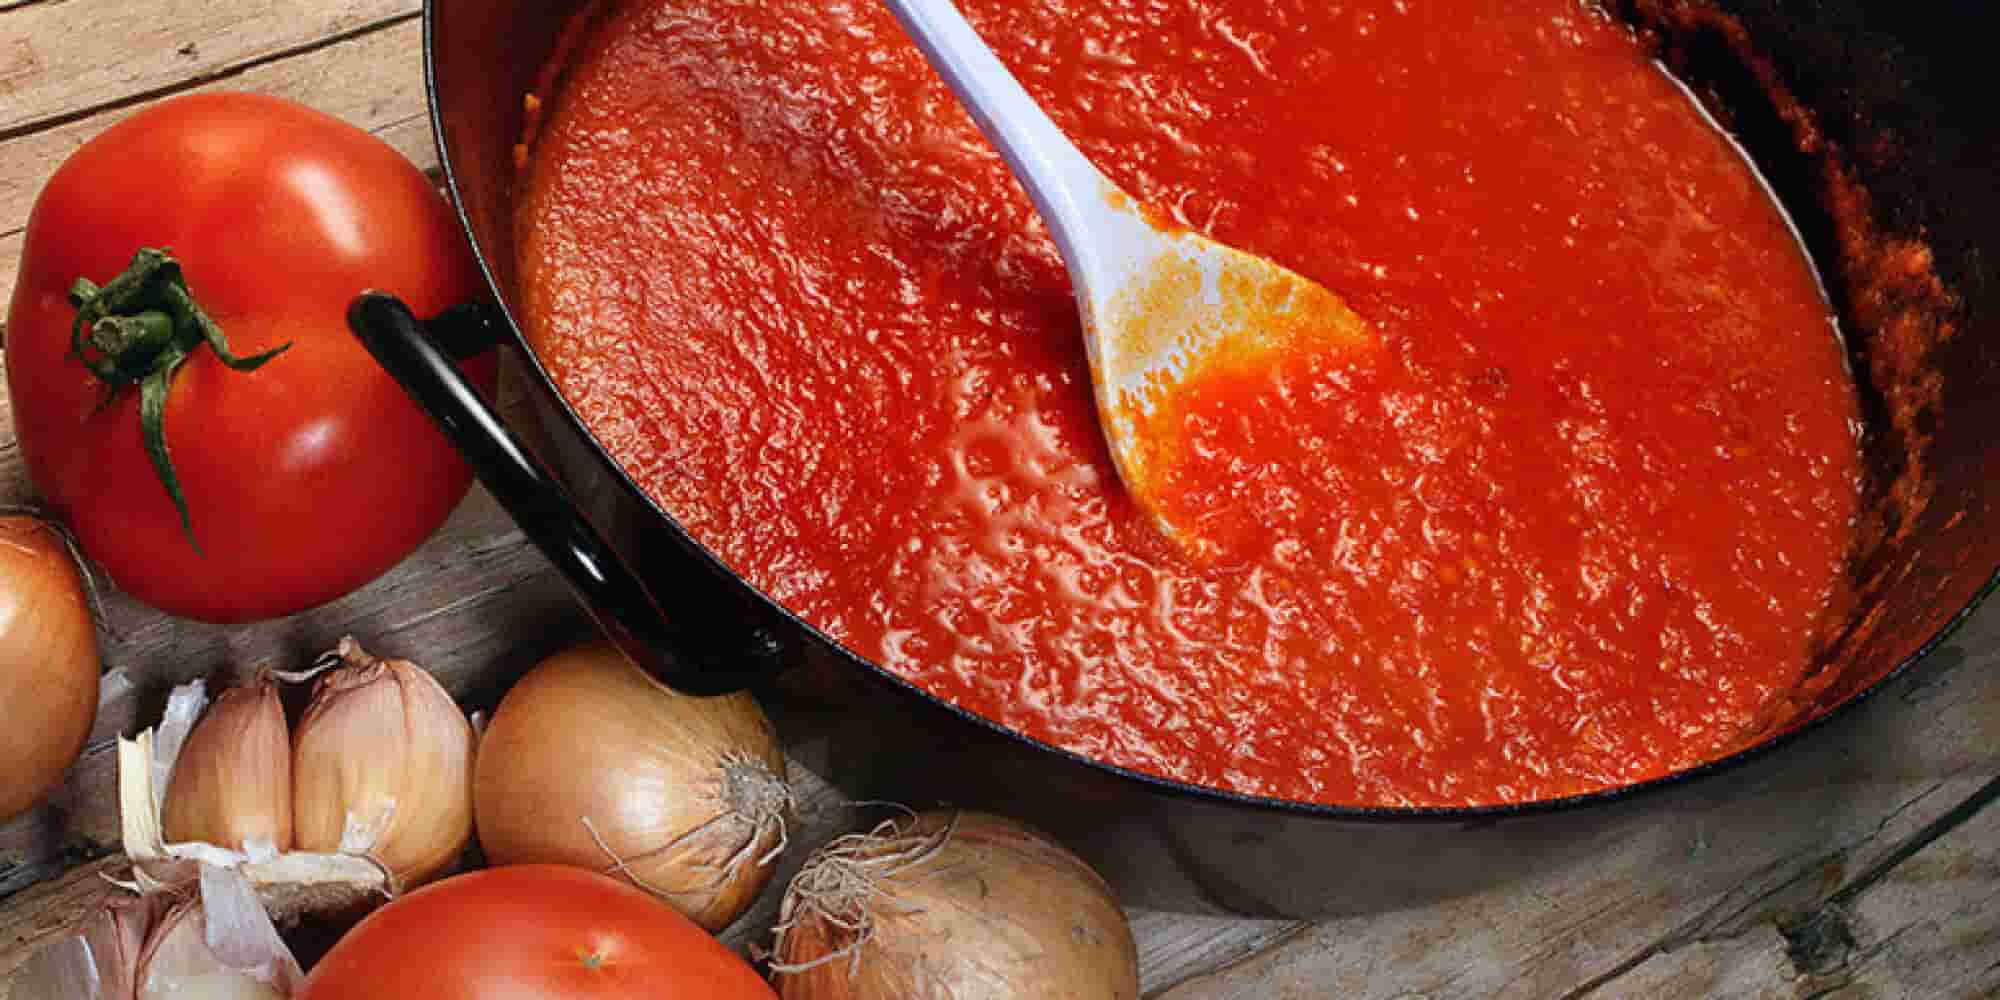 Tomato paste substitute